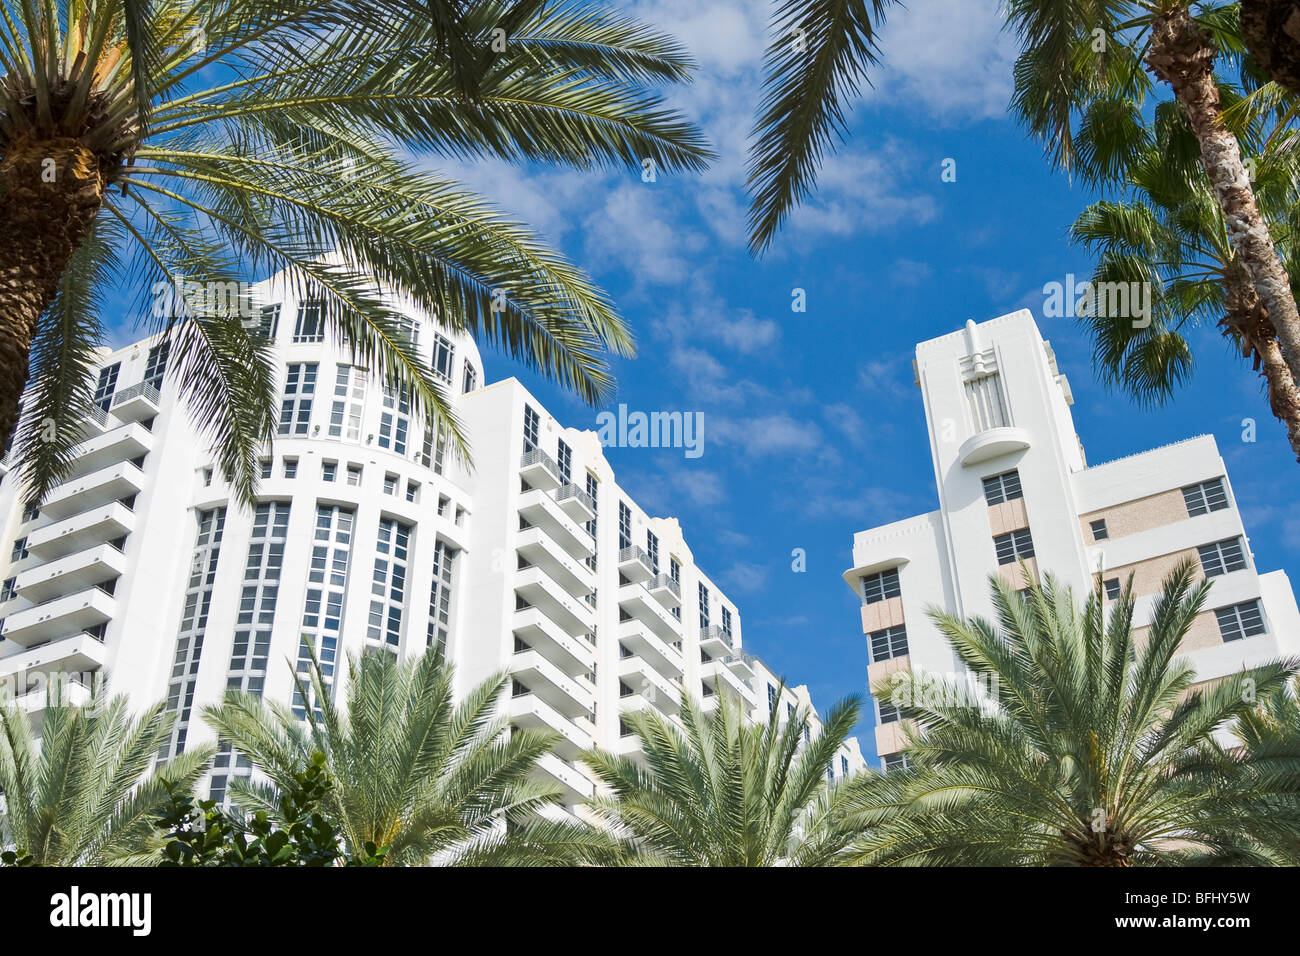 Loews und St. Moritz Hotels befindet sich in der Art-Déco-Althavanna von South Beach in Miami, Florida, Vereinigte Staaten von Amerika Stockfoto